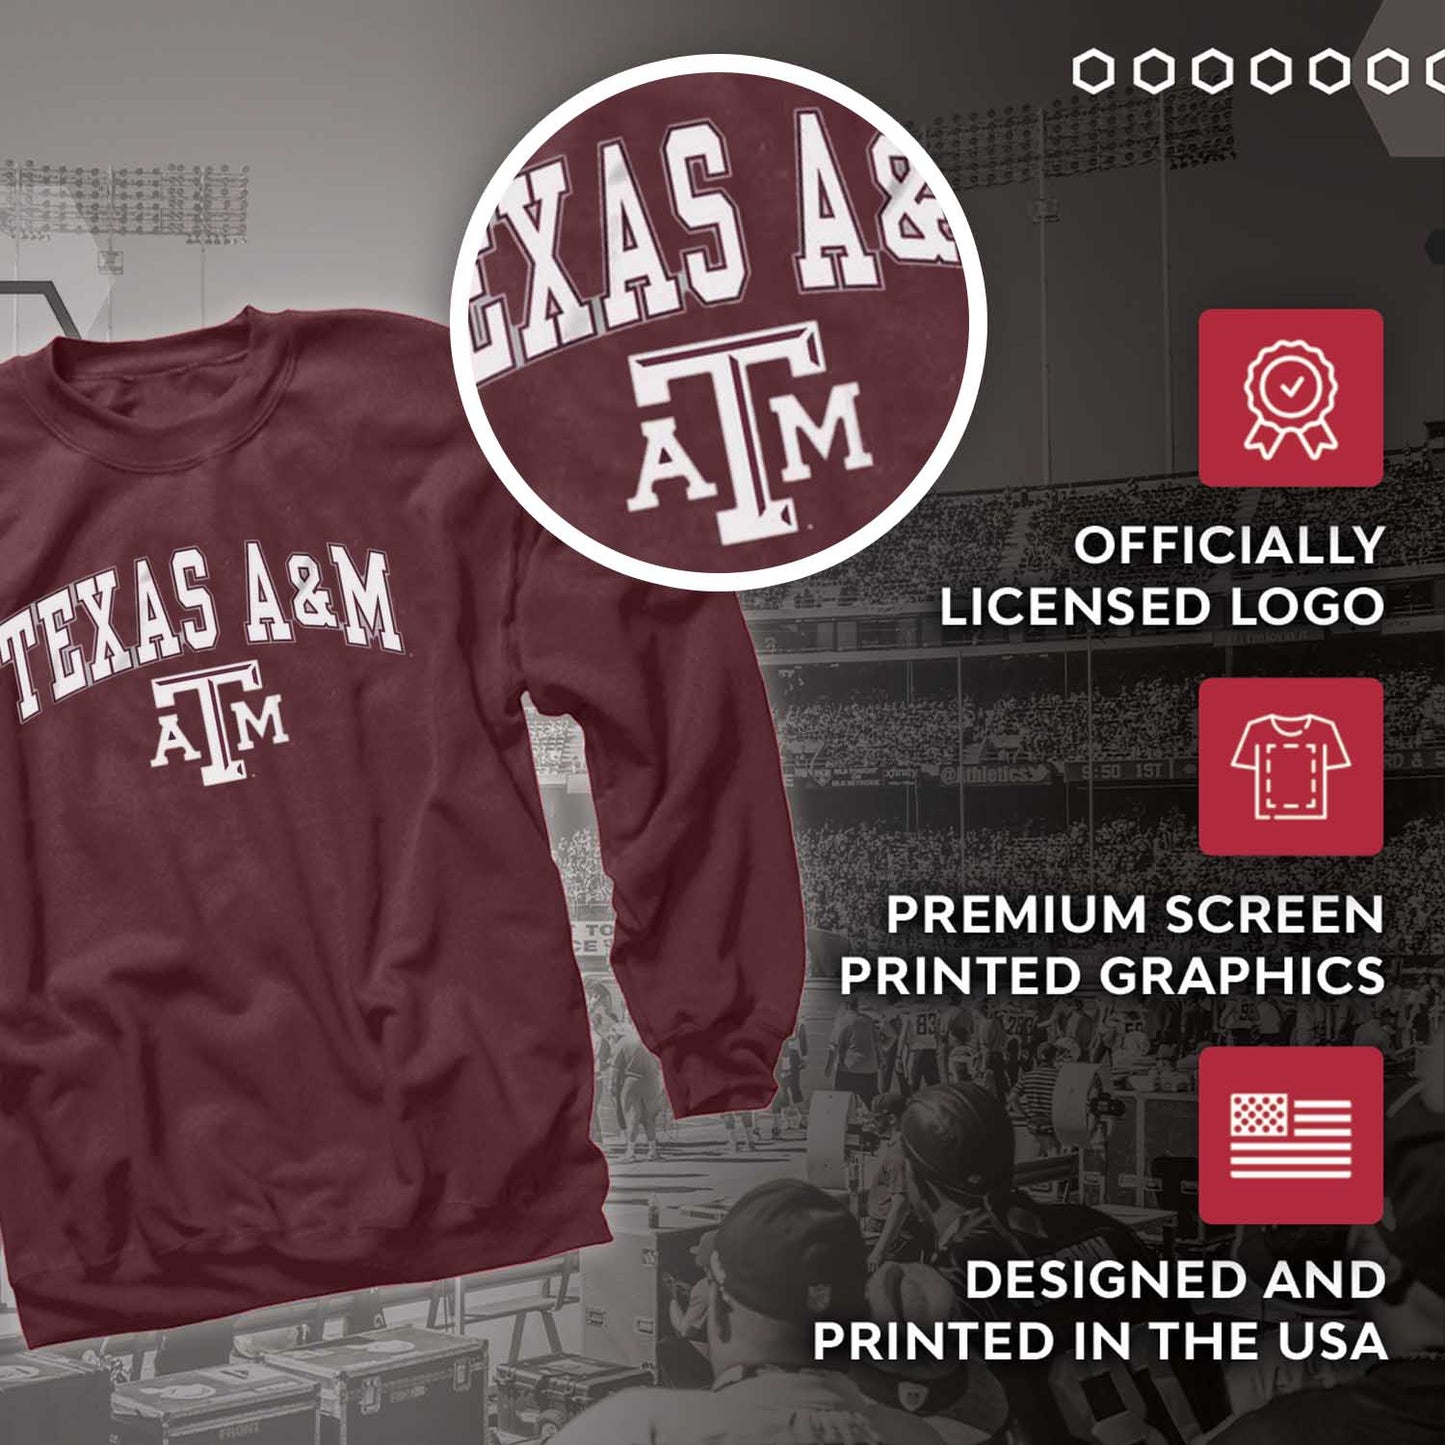 Texas A&M Aggies Adult Arch & Logo Soft Style Gameday Crewneck Sweatshirt - Maroon